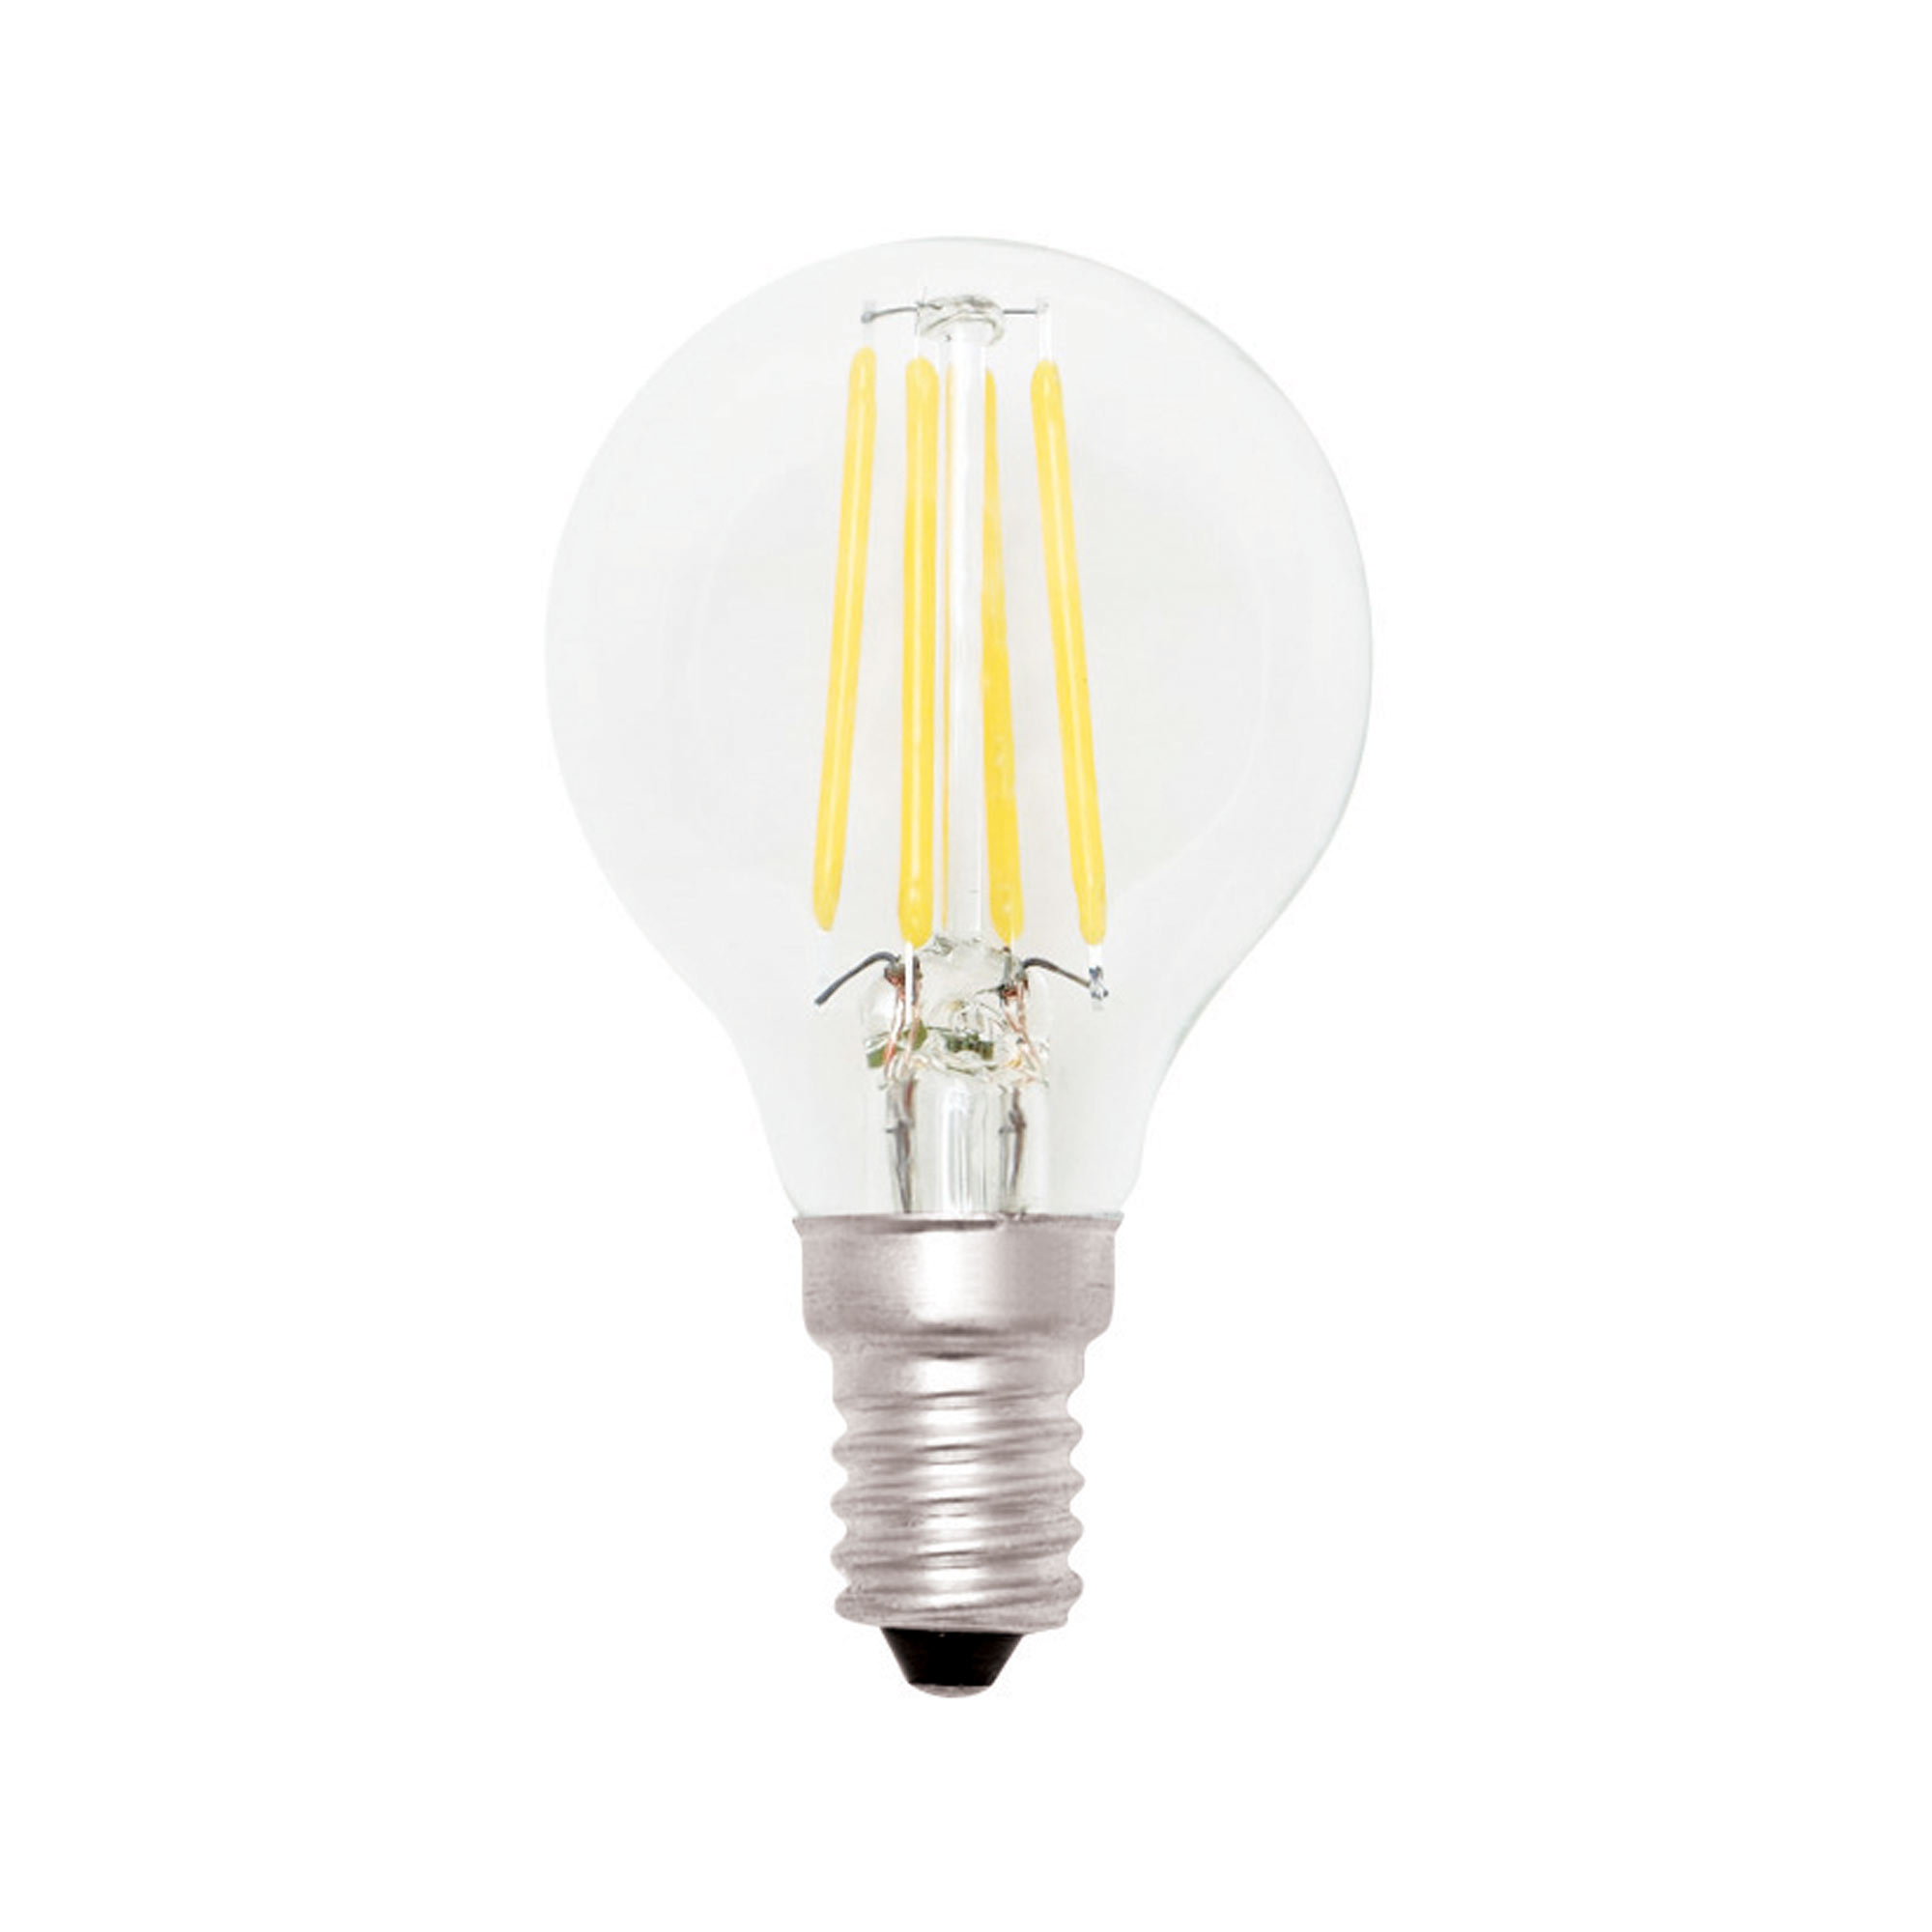 Lampada Led Minisfera a Filamento 4w E14 3000k Luce Cald